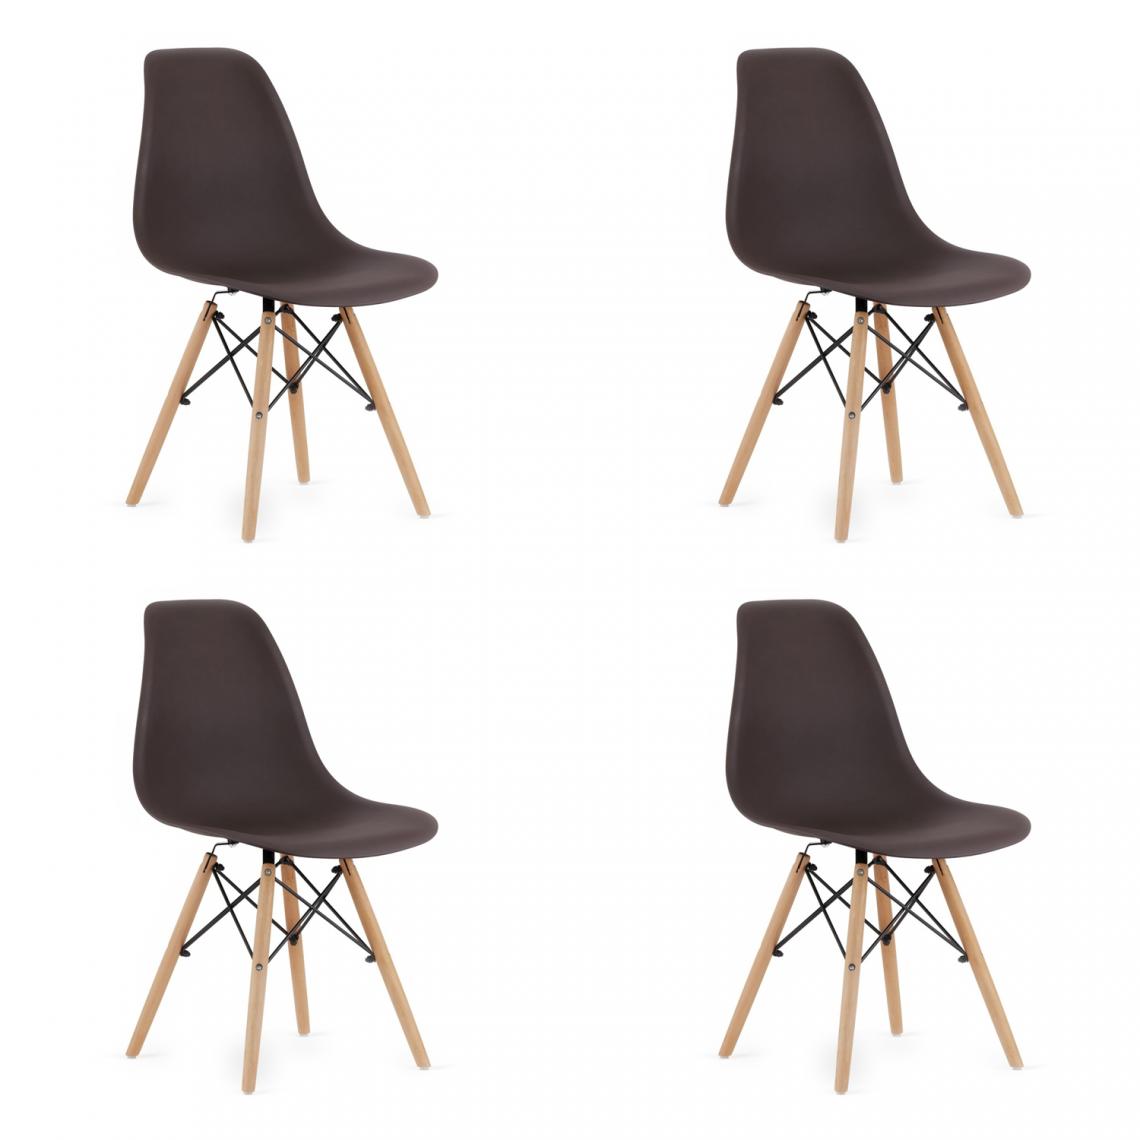 Hucoco - OSATA - Lot de 4 chaises en PP style moderne salon/cuisine - 81x54x46cm - Chaises de salle à manger - Marron - Chaises